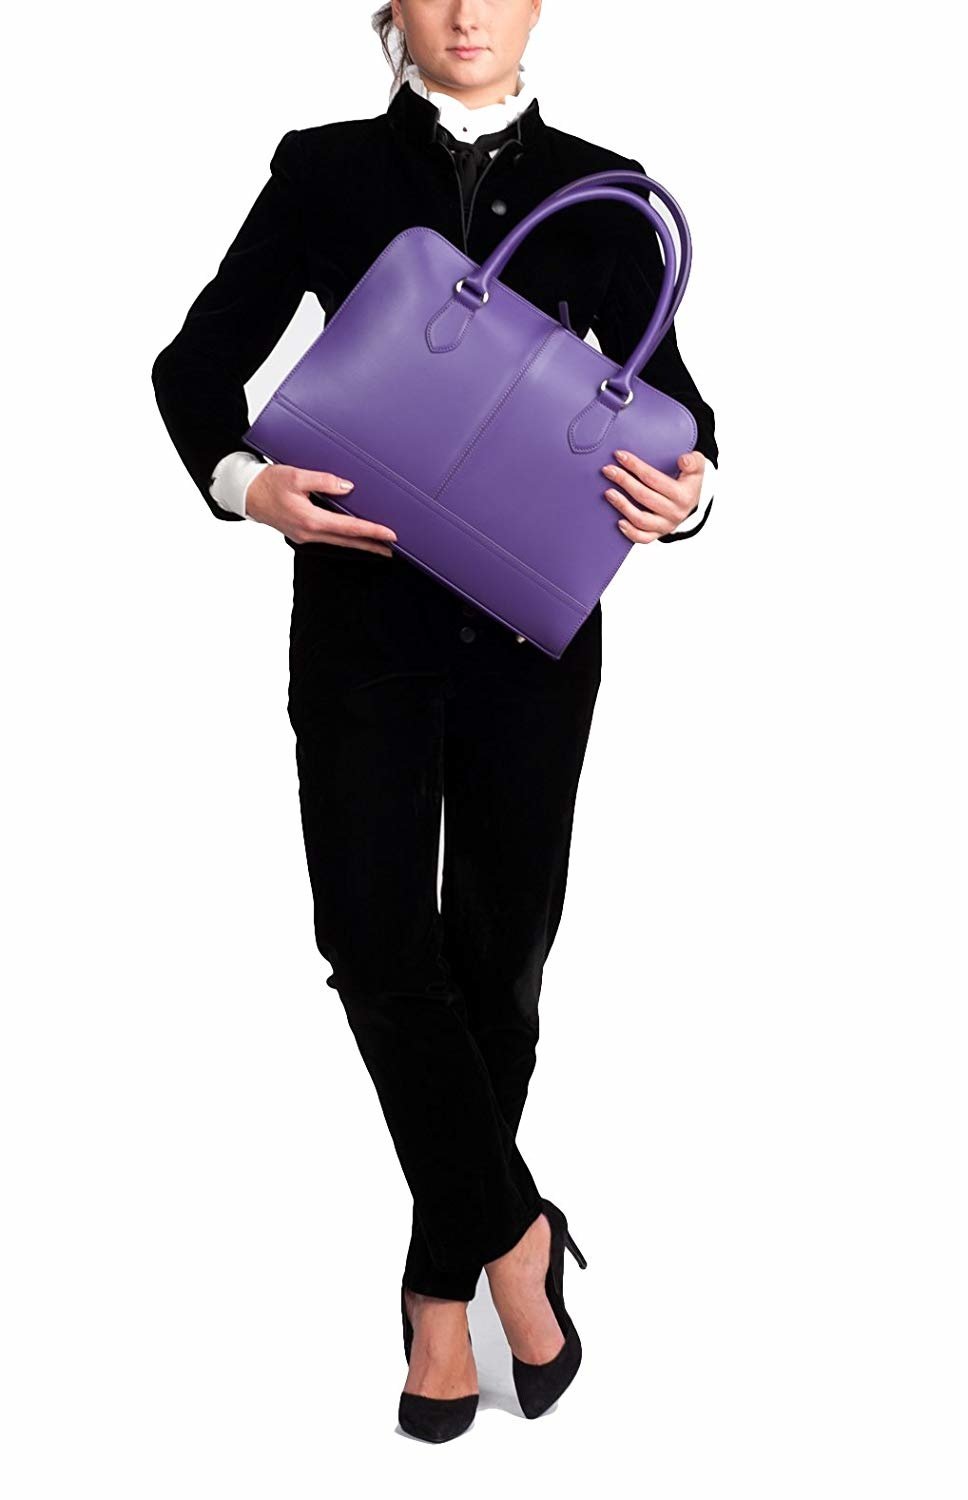 13,3 Zoll Laptoptasche Fuer Damen - Spaltleder - Designer Aktentasche, Handtasche, Schultertasche ohne Trolleyband - Made in Italy - Violett-5